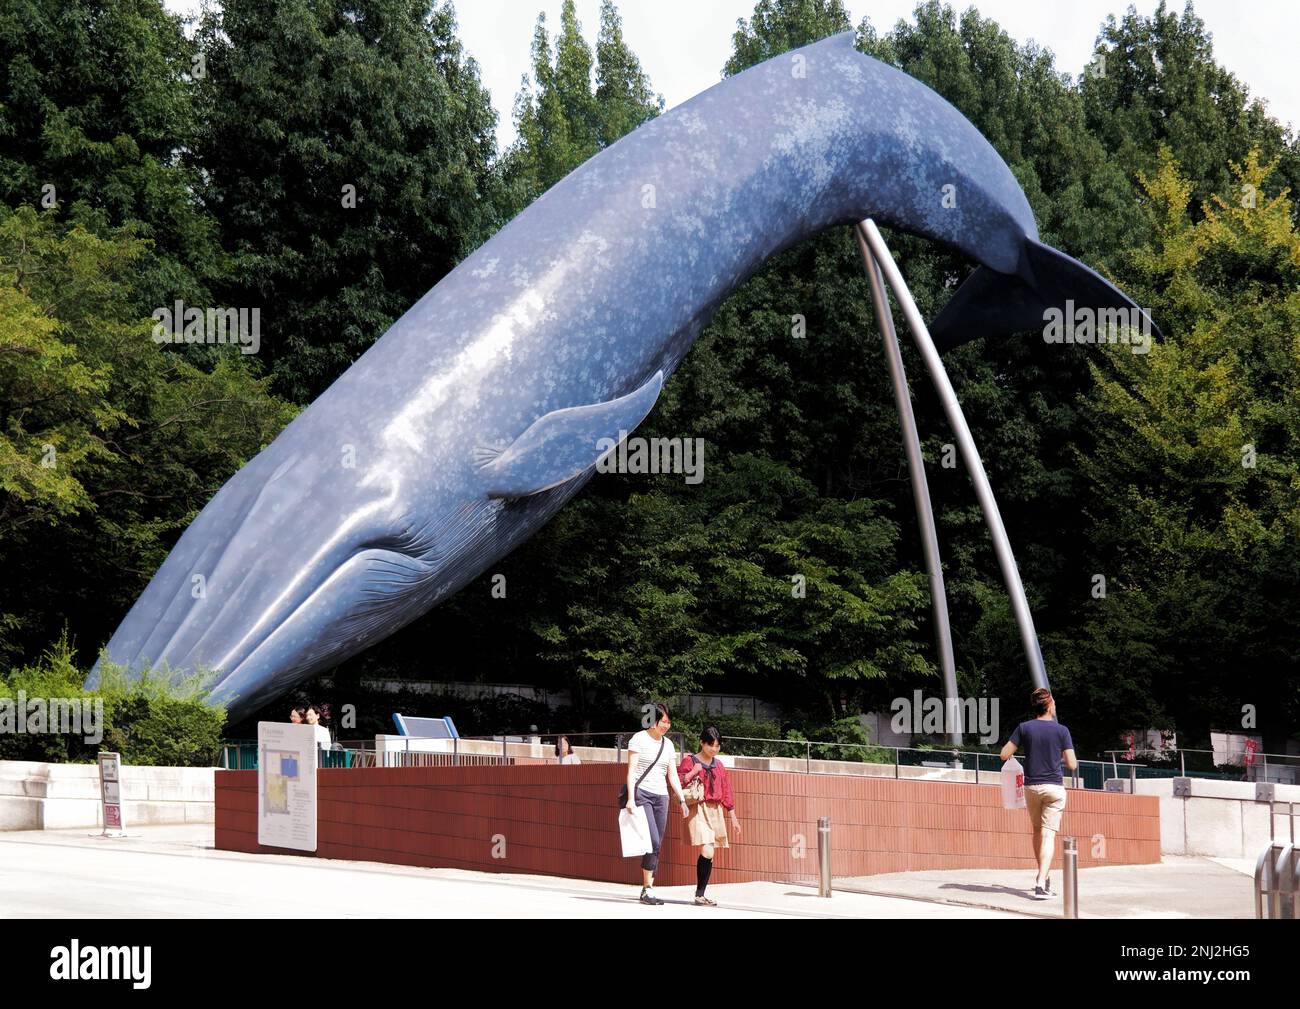 Tokyo, Japon - sept. 2017 : Sculpture de la baleine bleue au Musée national de la nature et des sciences, grande variété d'expositions d'histoire naturelle Banque D'Images